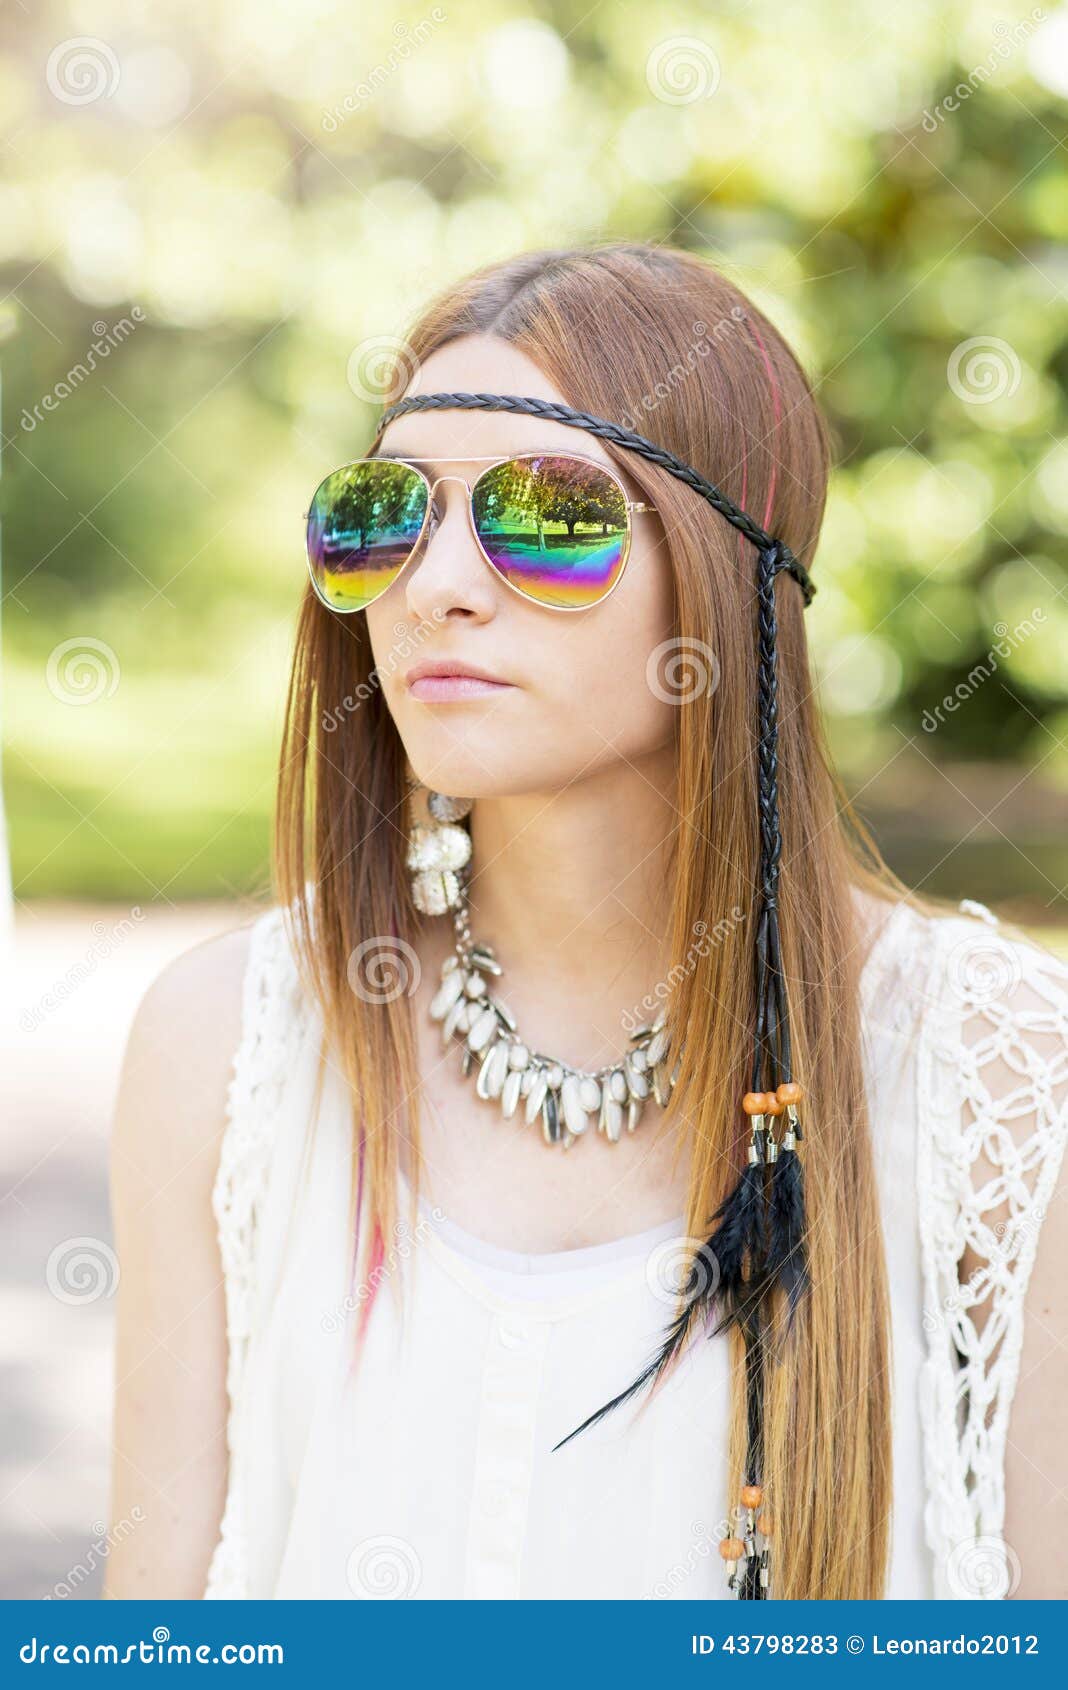 Retrato De La Mujer Joven Hermosa Con Estilo Del Hippie De Las Gafas De Sol, Imagen de - Imagen de estilo, mujer: 43798283